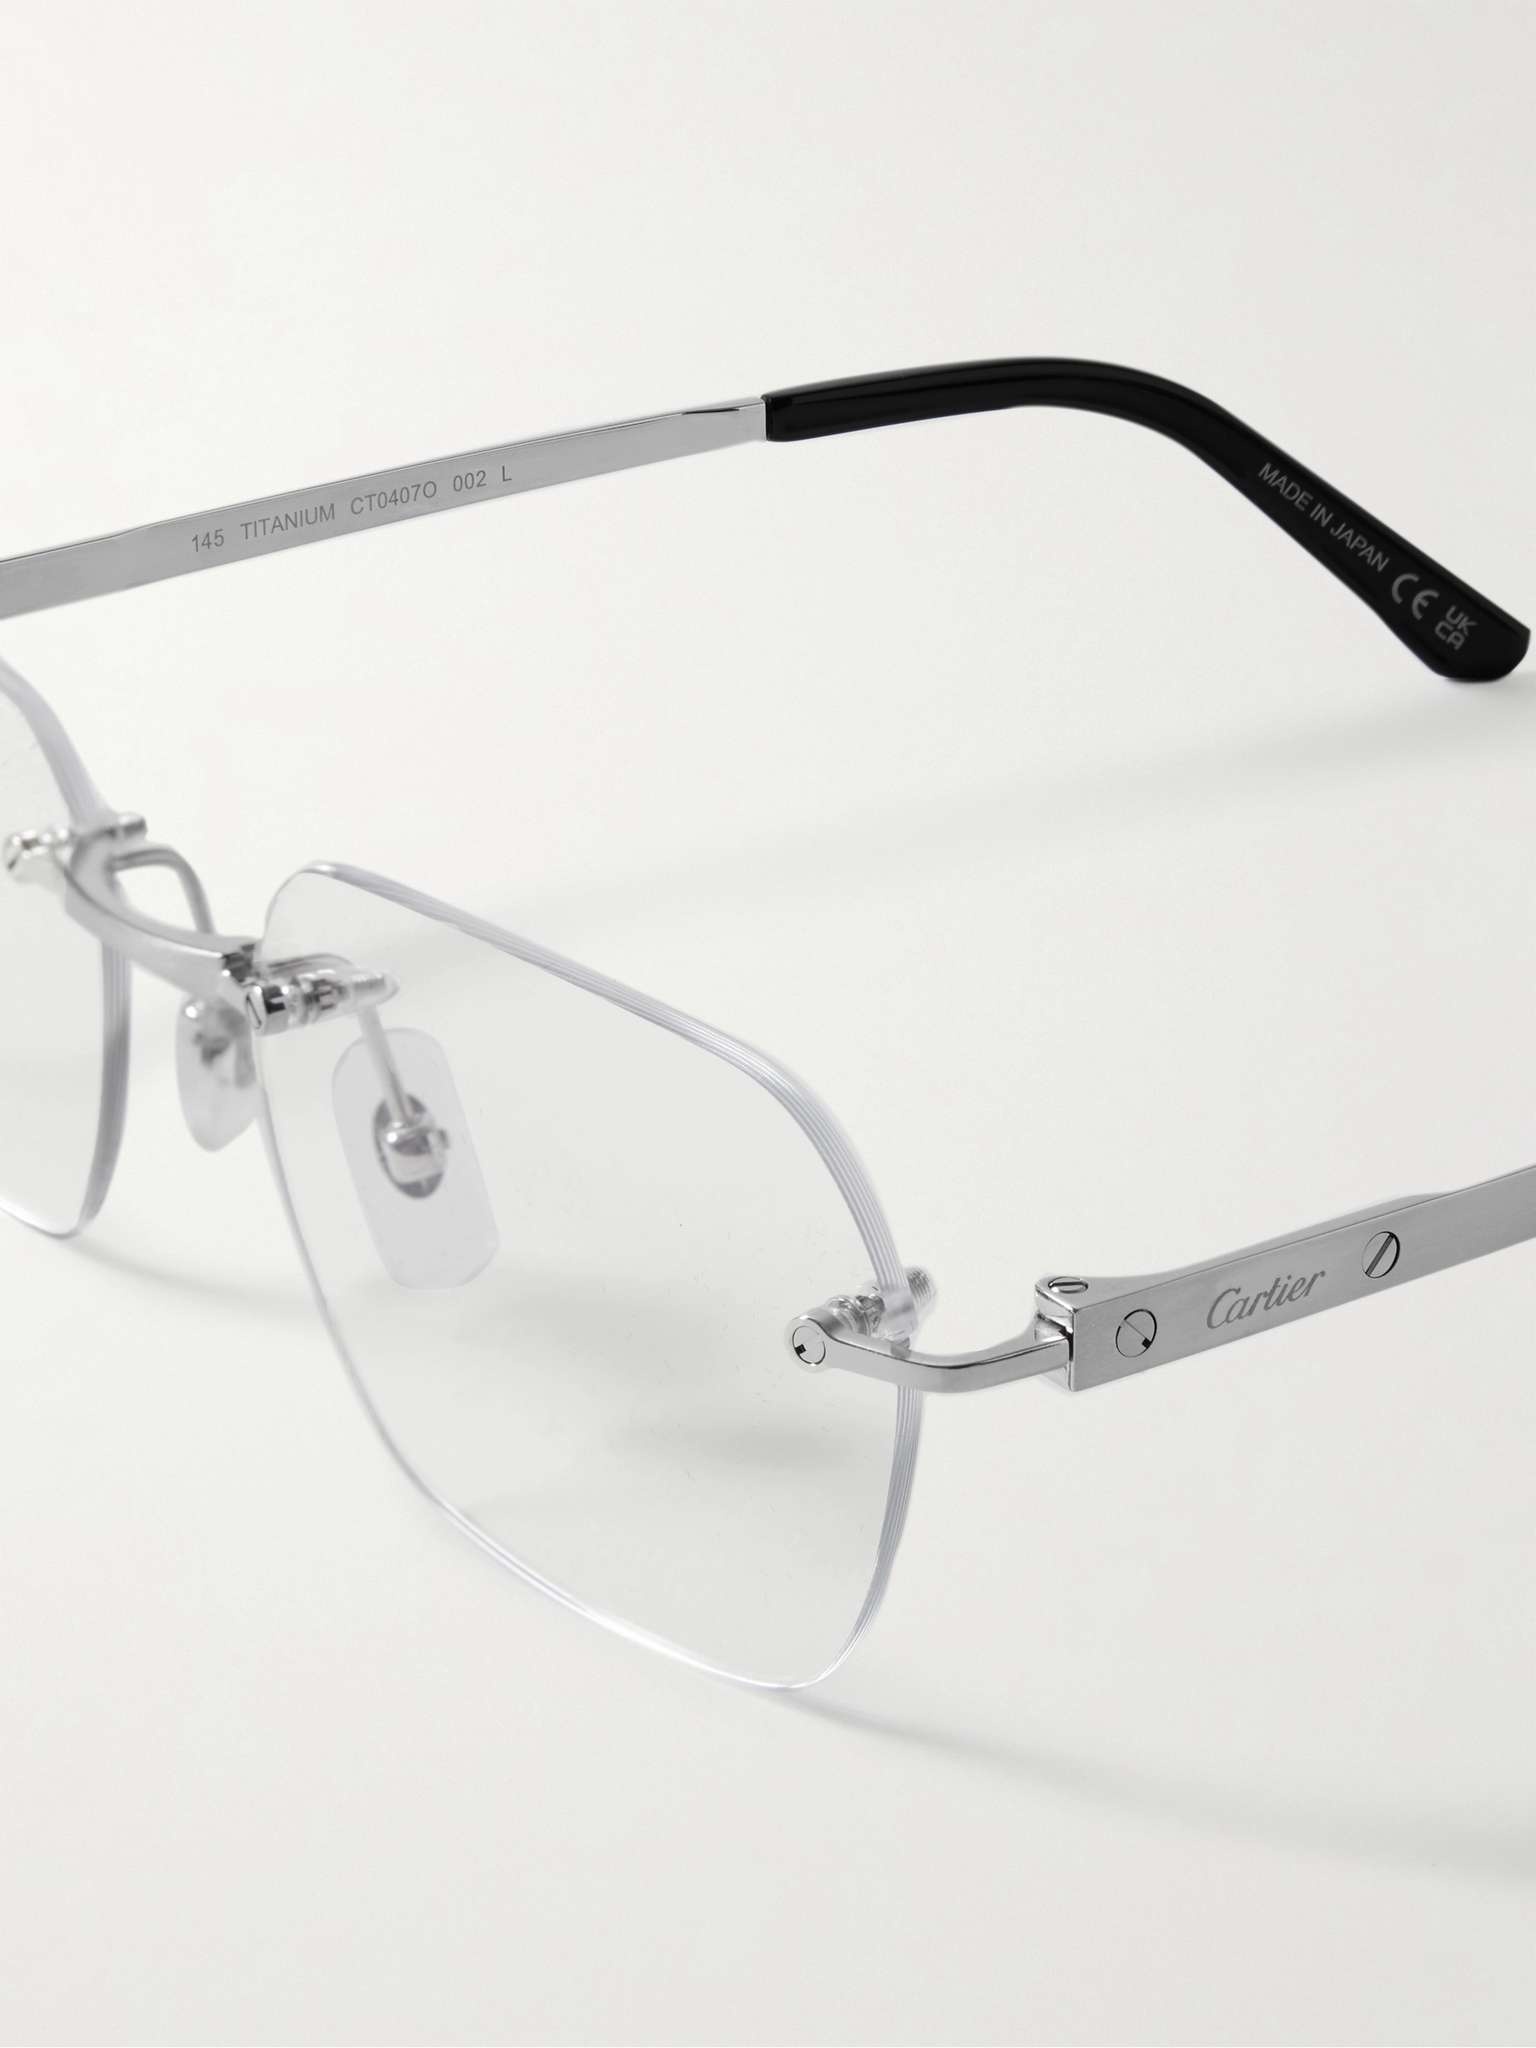 Frameless Titanium Optical Glasses - 4